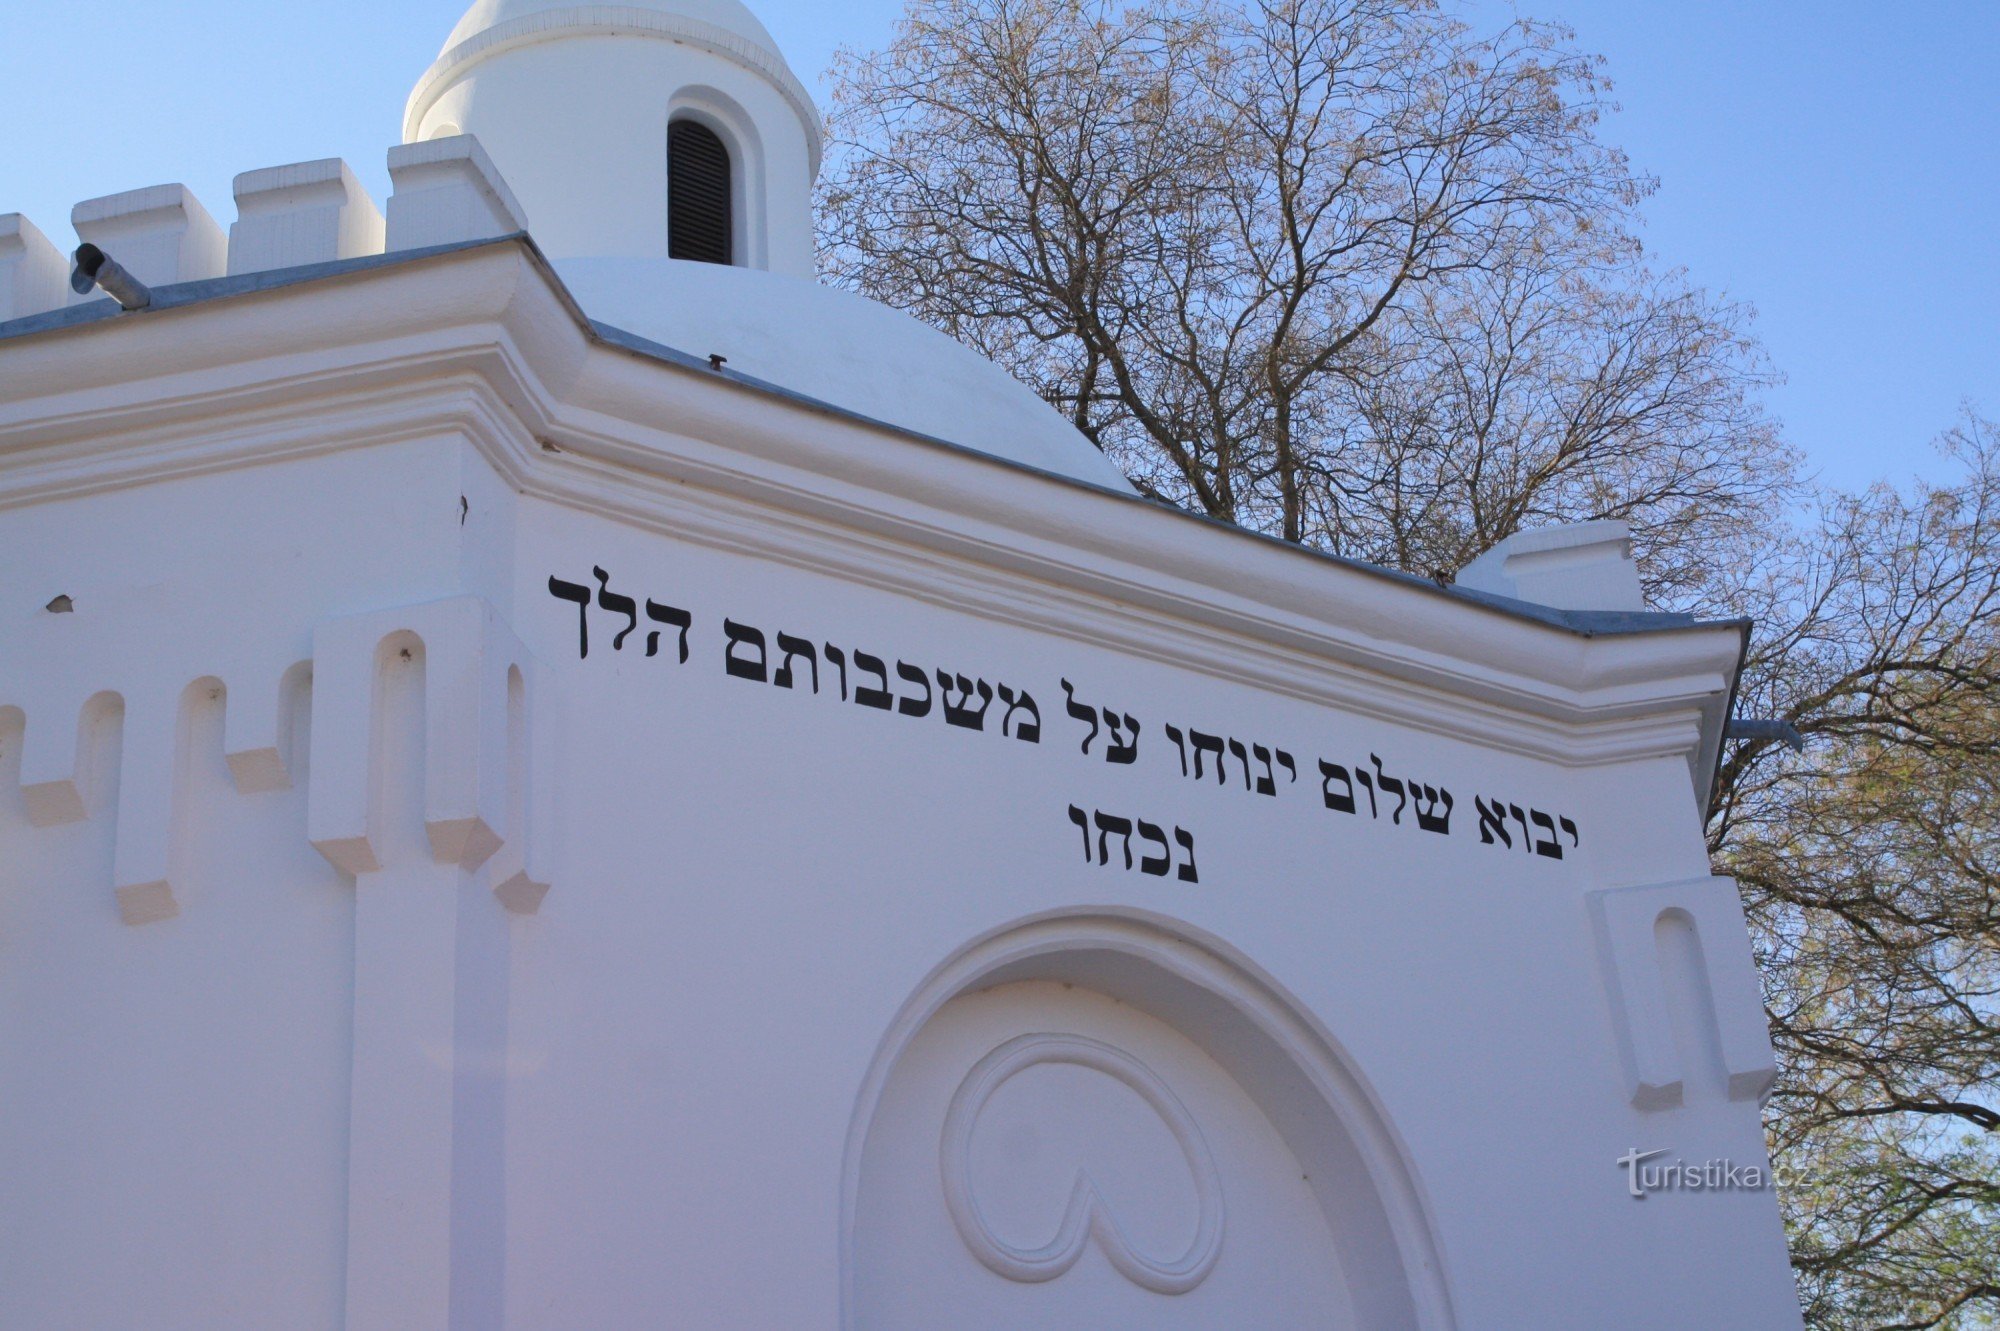 Detail van de synagoge